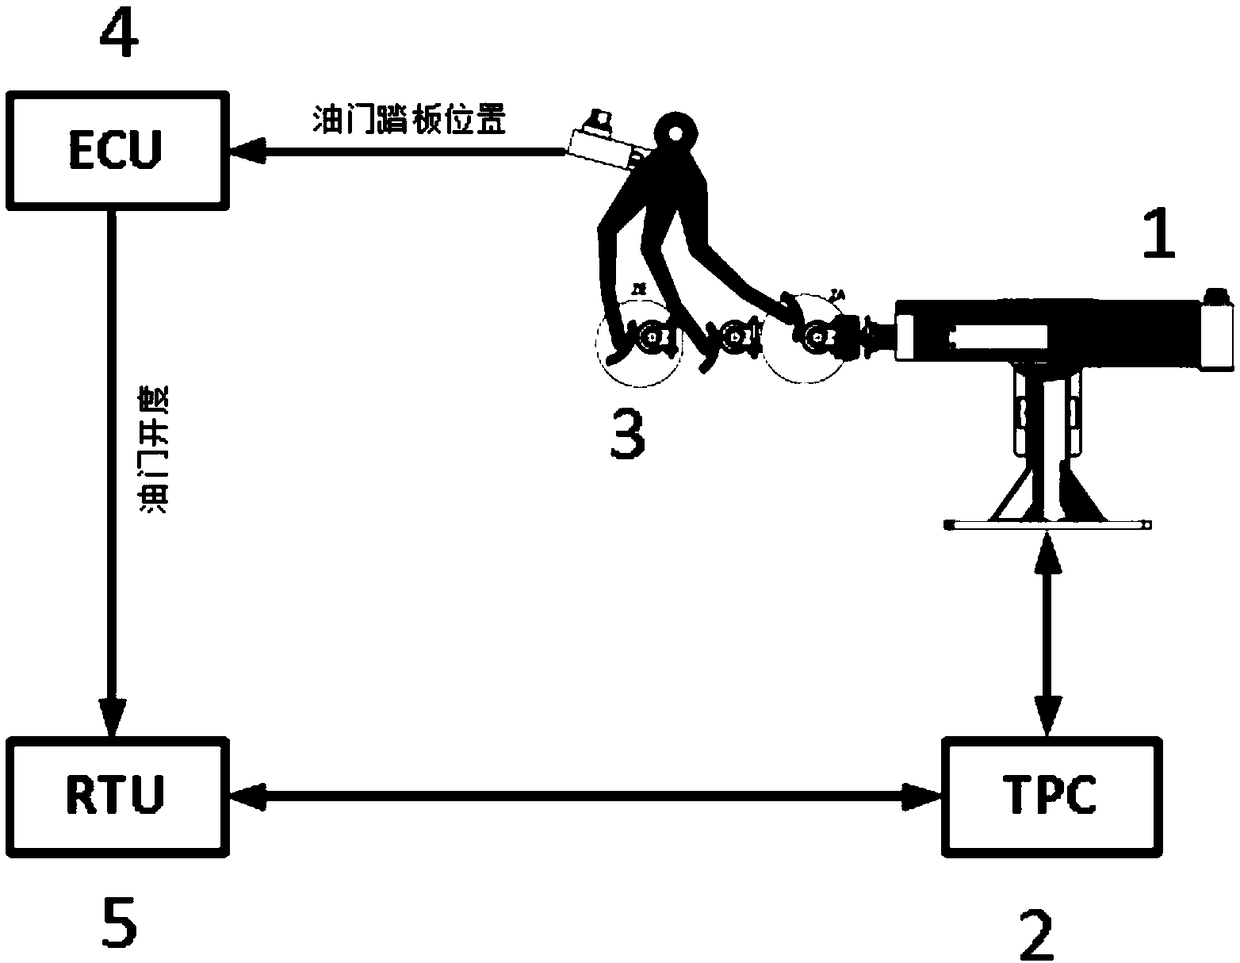 Throttle correction method for power assembly test rack